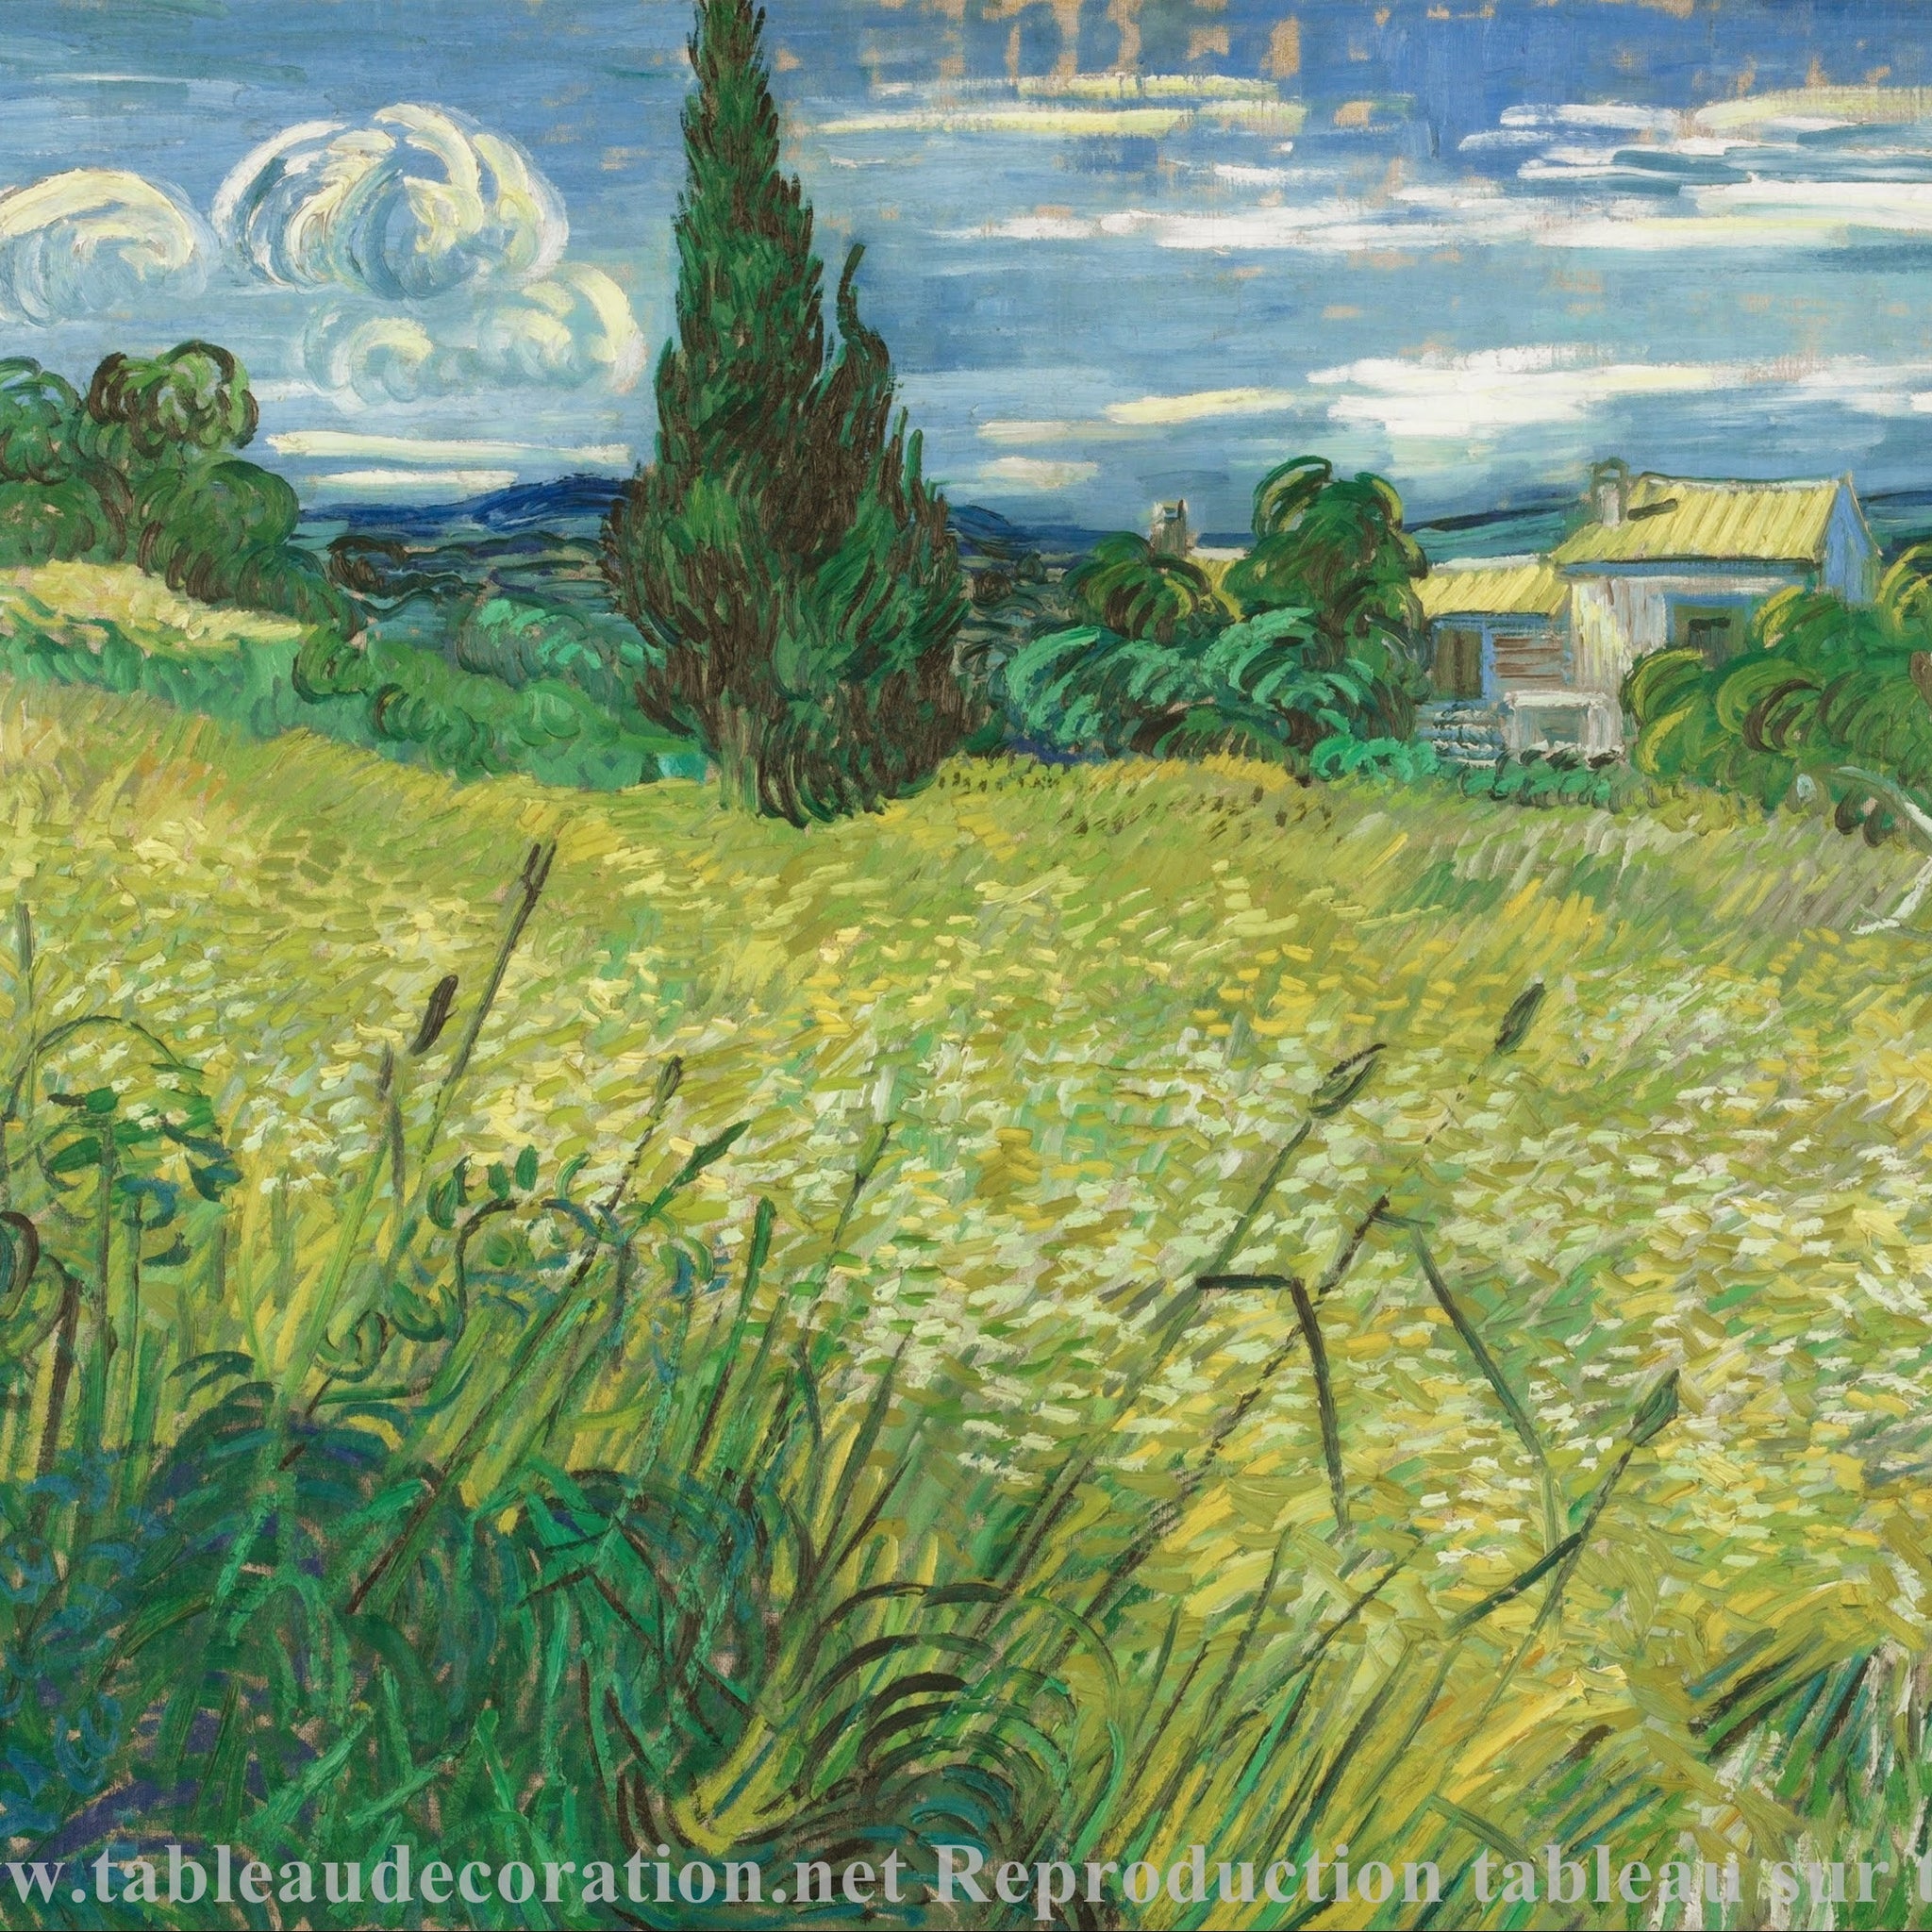 Le Champ de blé vert avec cyprès - Vincent van Gogh